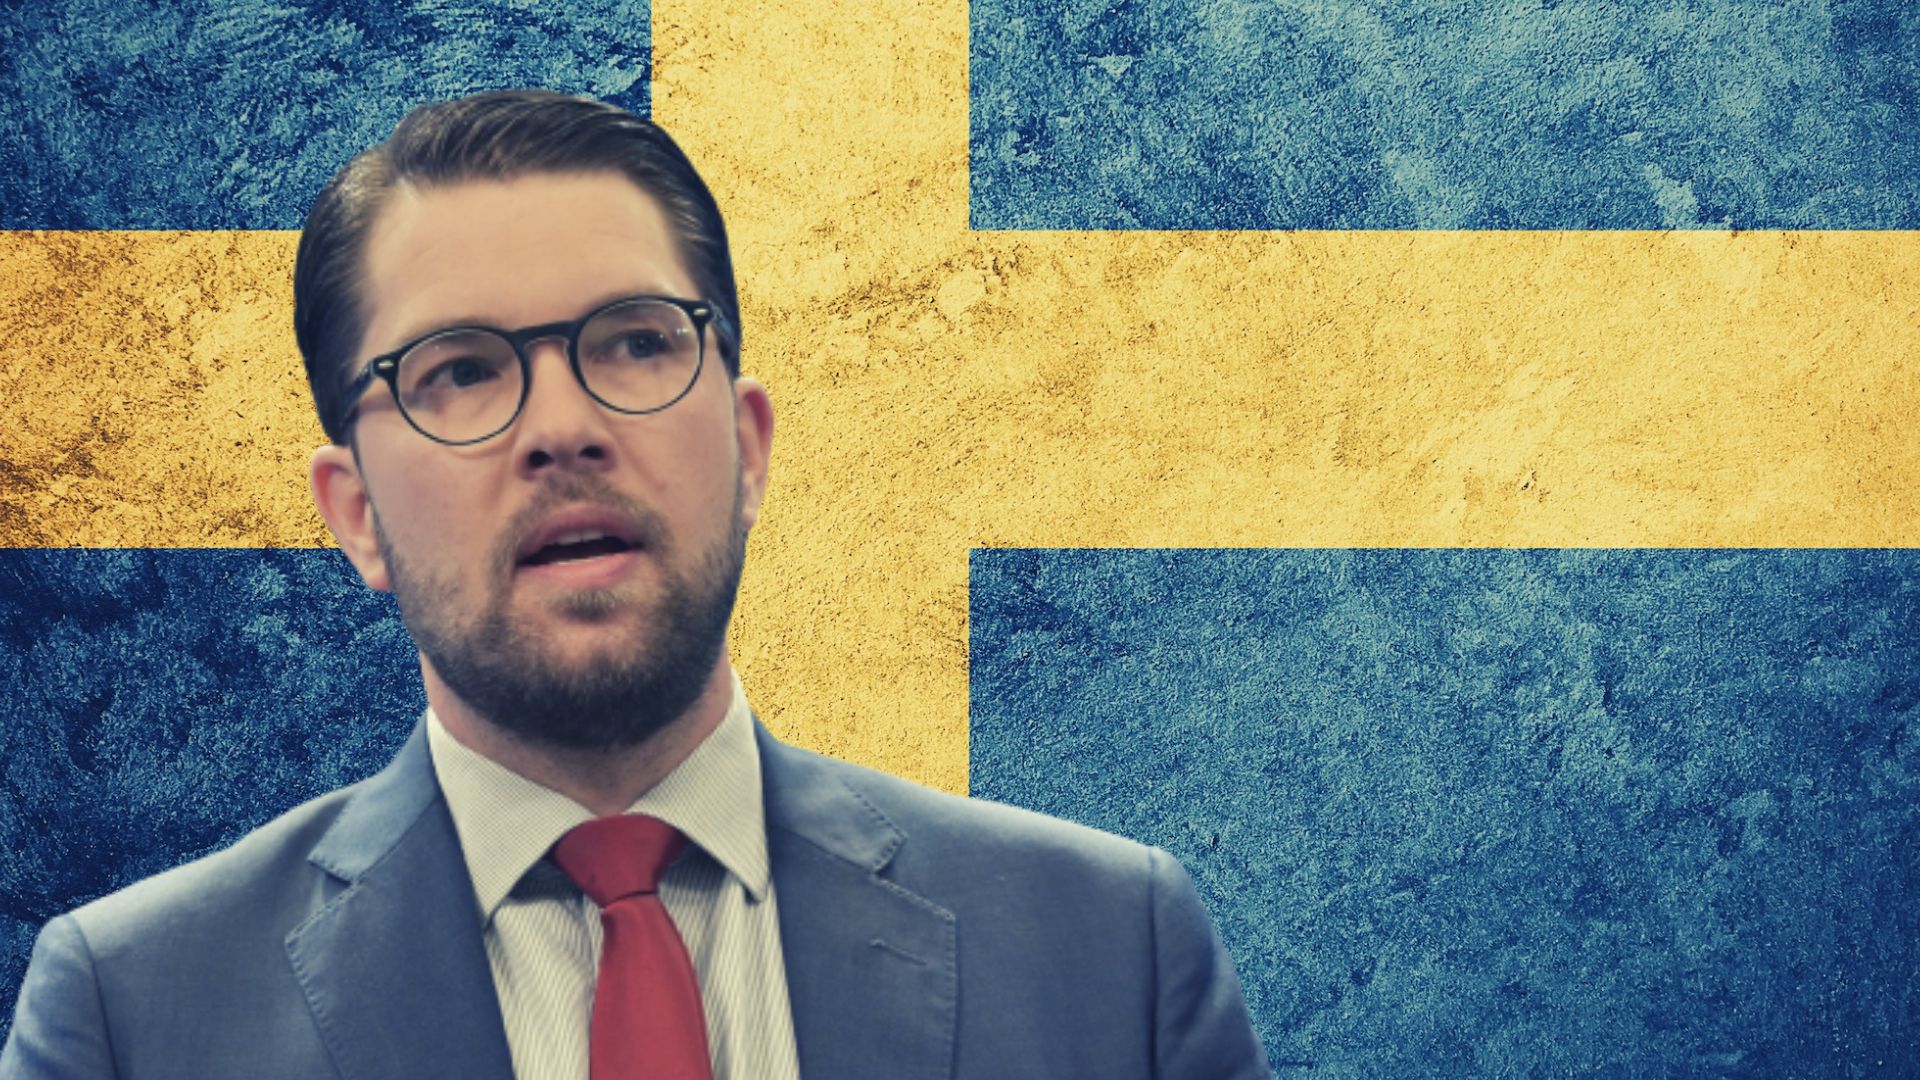 Schweden muss sich auf den EU-Austritt vorbereiten, sagt der einflussreiche Parteichef der Schwedendemokraten